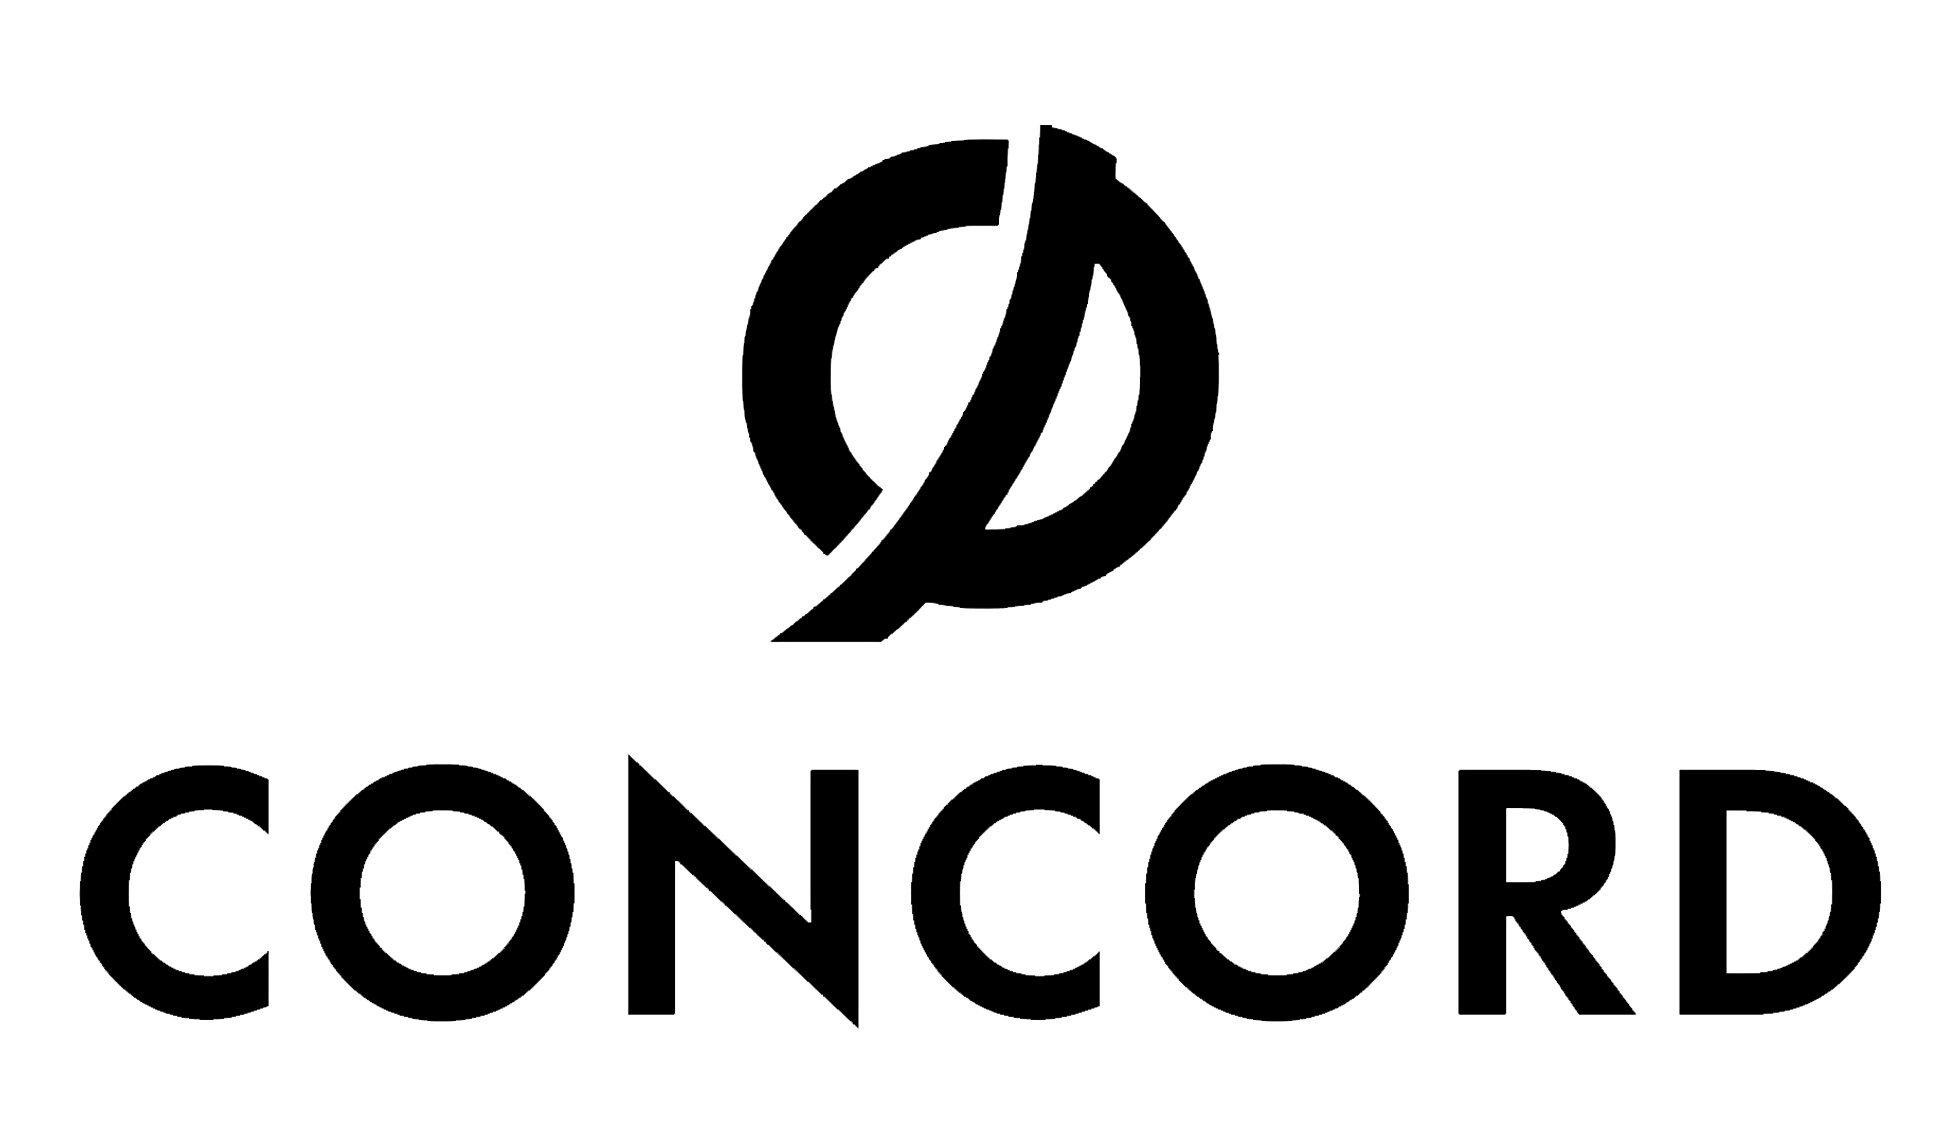 Concord-logo copy.jpg